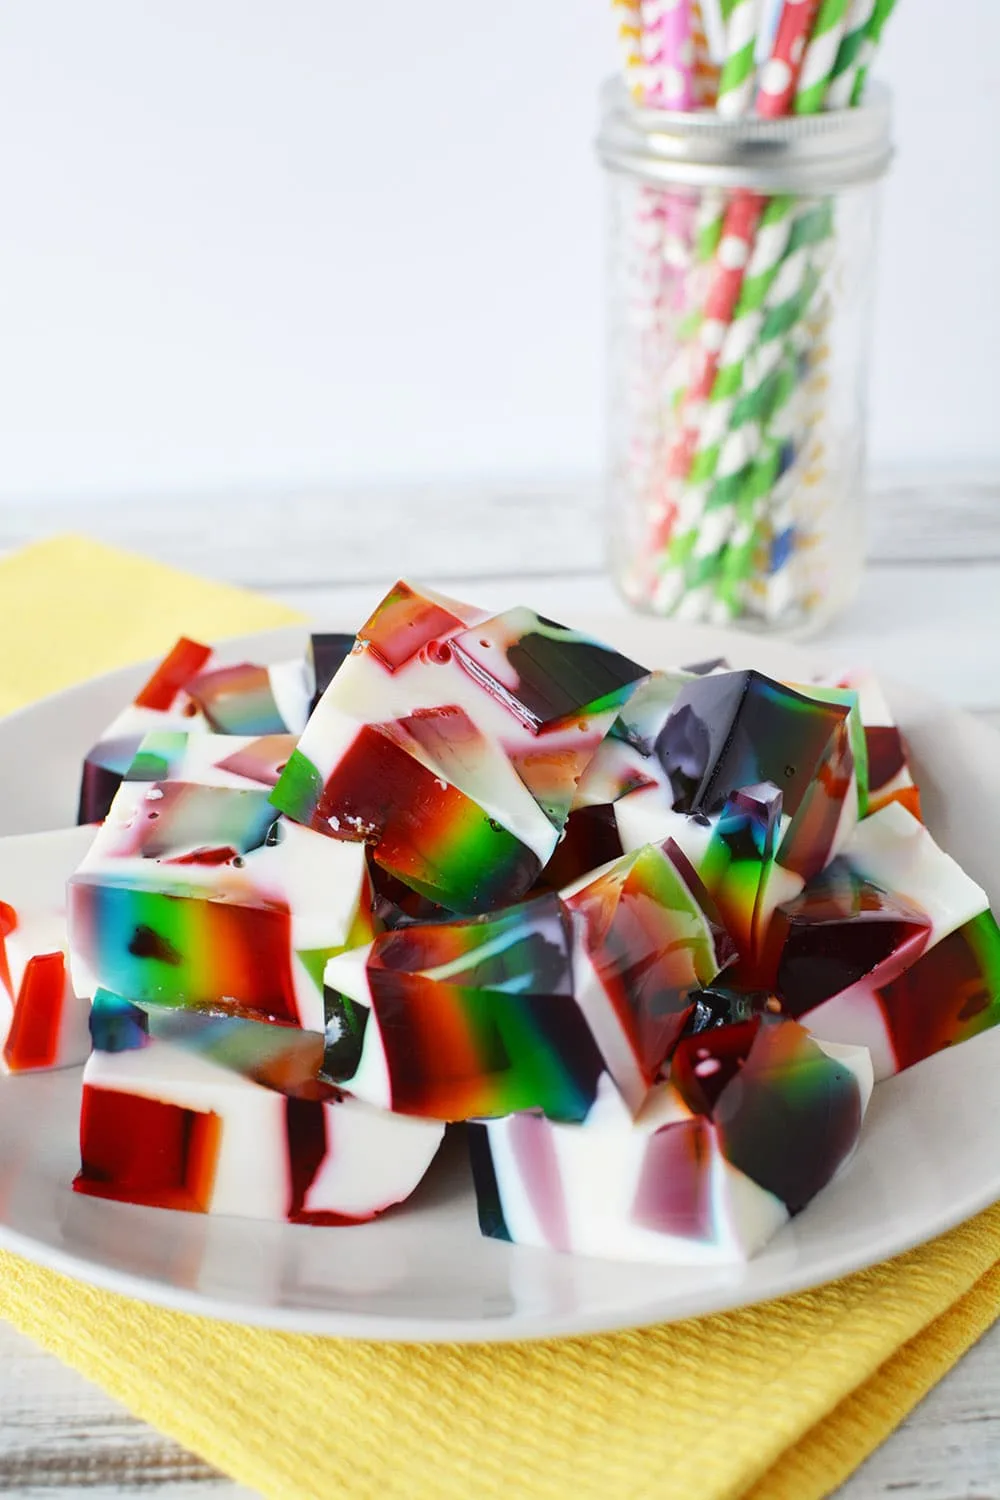 Rainbow jello cubes on a plate.